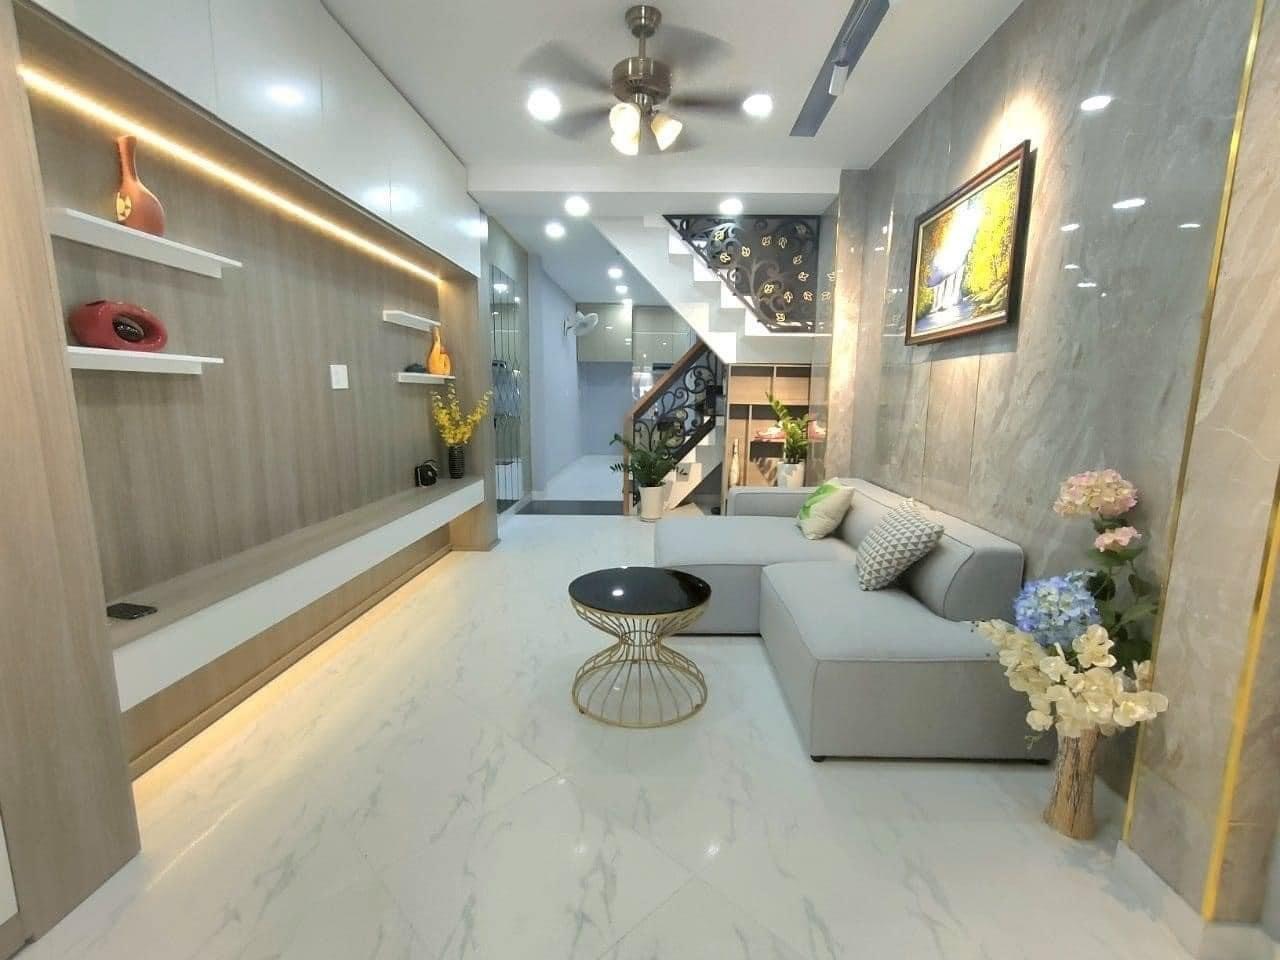 Hàng hot! Bán nhà mới HXH hơn 6m, 2 lầu + sân thượng đường Năm Châu gần Bệnh viện Thống Nhất